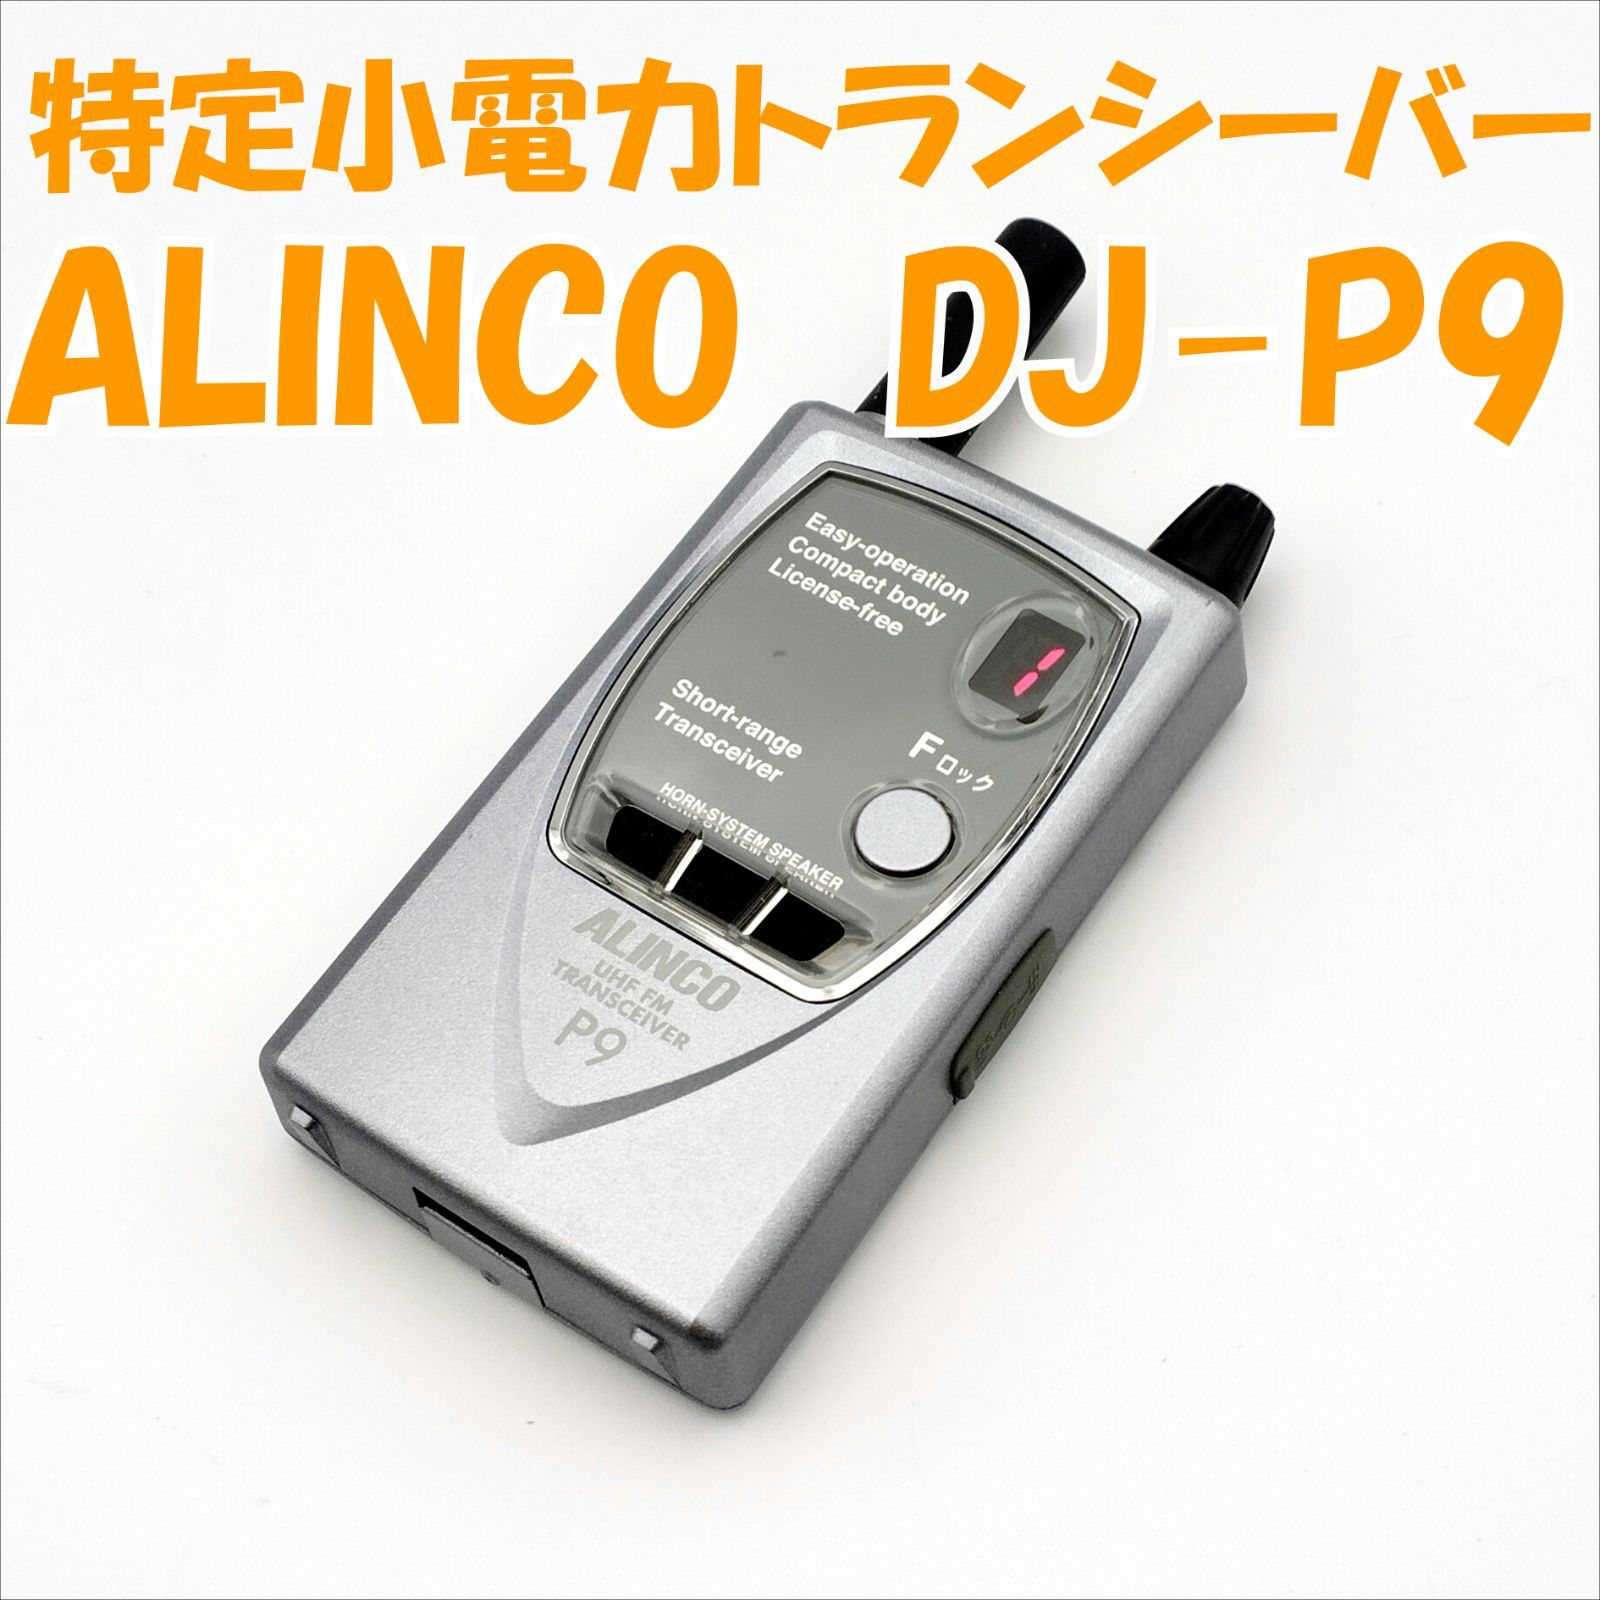 トランシーバーALINCO DJ-P9